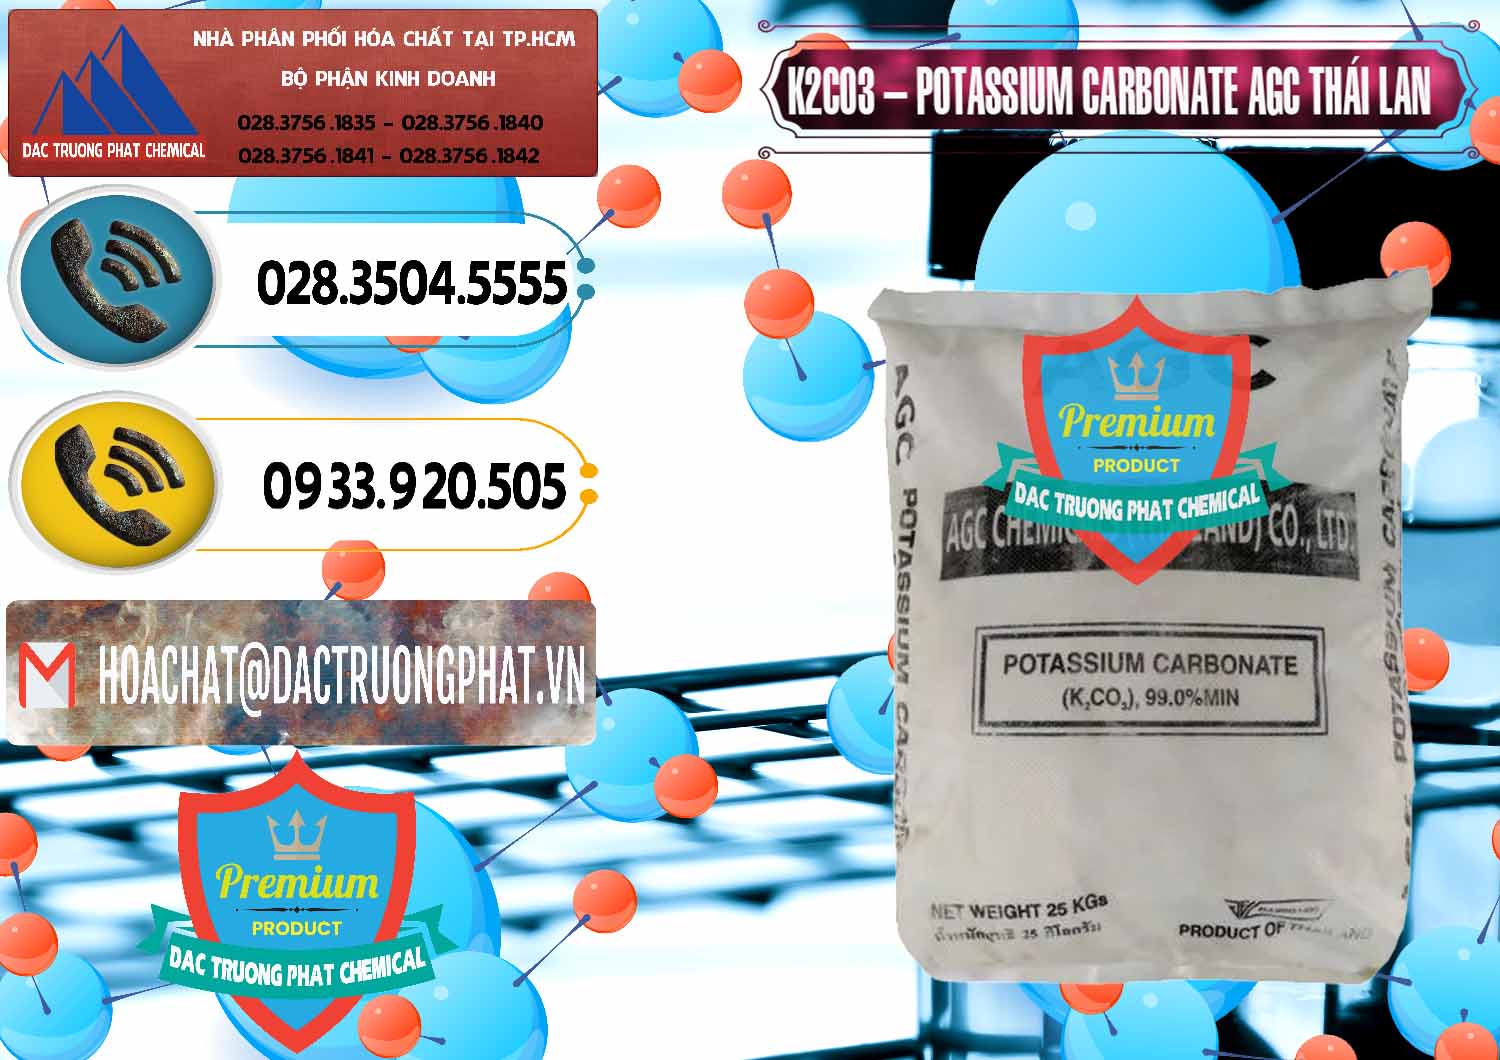 Nơi chuyên phân phối & bán K2Co3 – Potassium Carbonate AGC Thái Lan Thailand - 0471 - Chuyên phân phối - cung cấp hóa chất tại TP.HCM - hoachatdetnhuom.vn